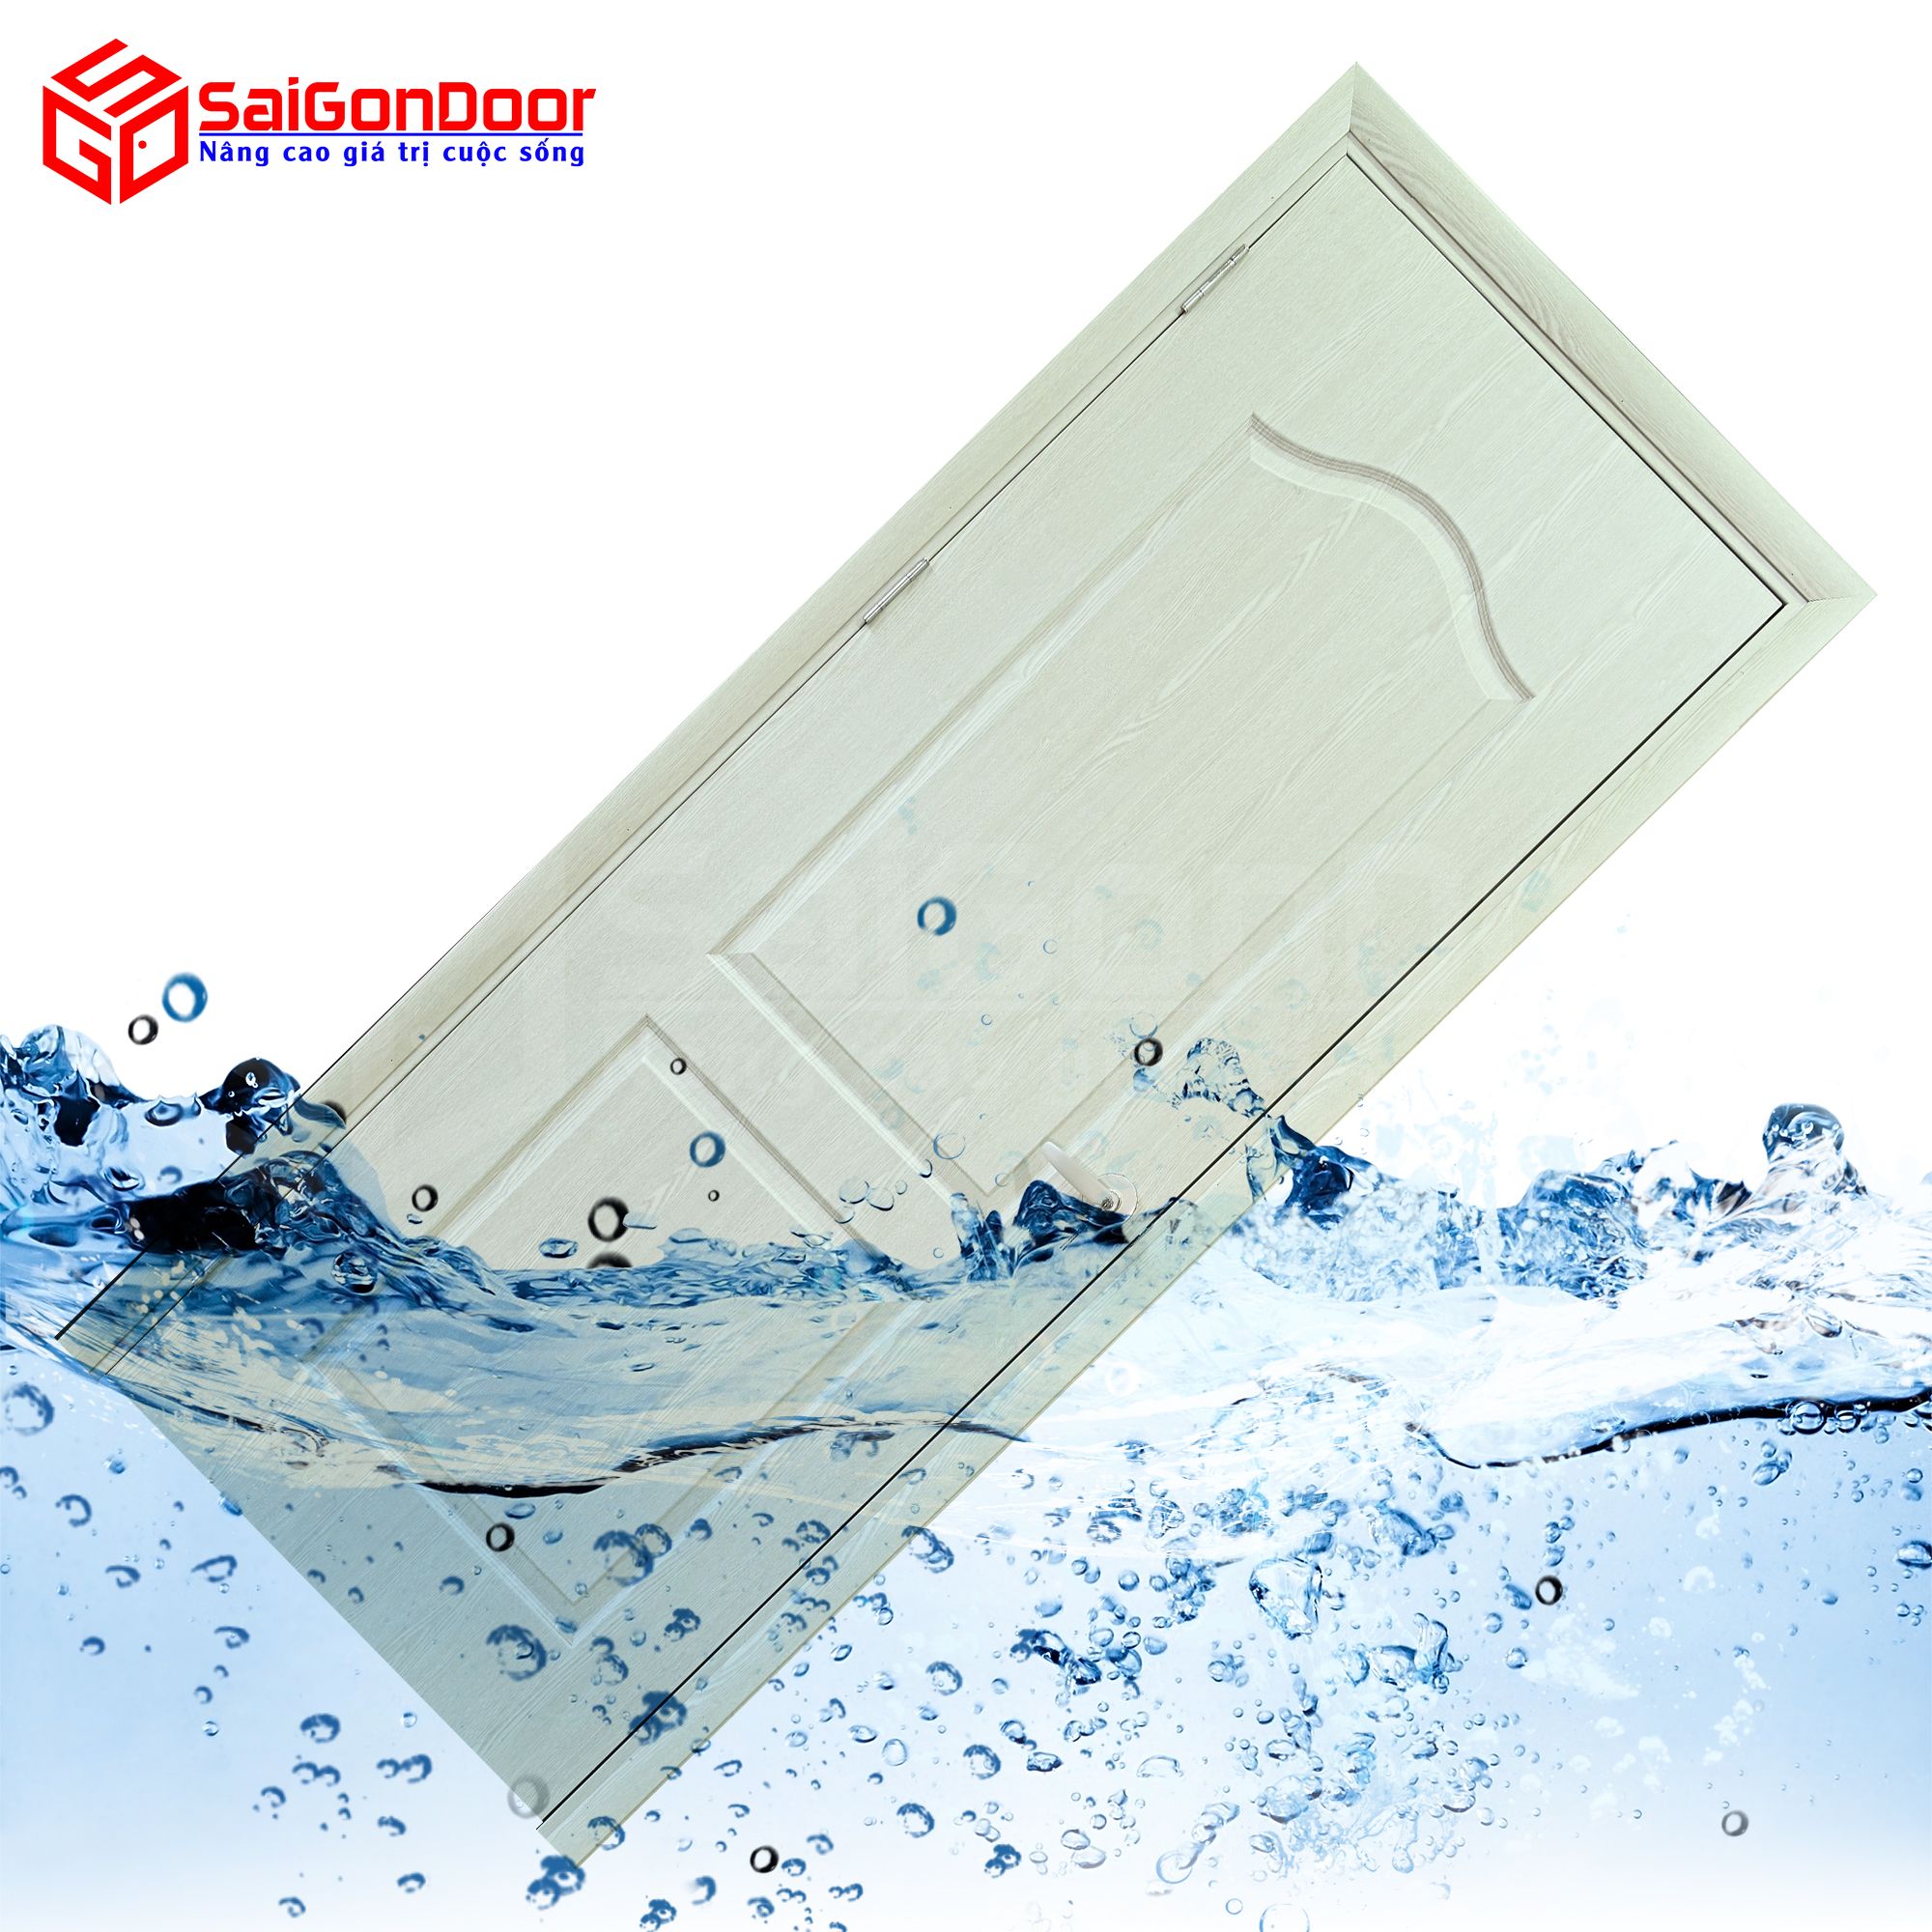 Cửa nhựa ABS thích hợp dùng làm cửa nhà vệ sinh, cửa văn phòng, cửa phòng ngủ với nhiều tính năng và ưu điểm vượt trội